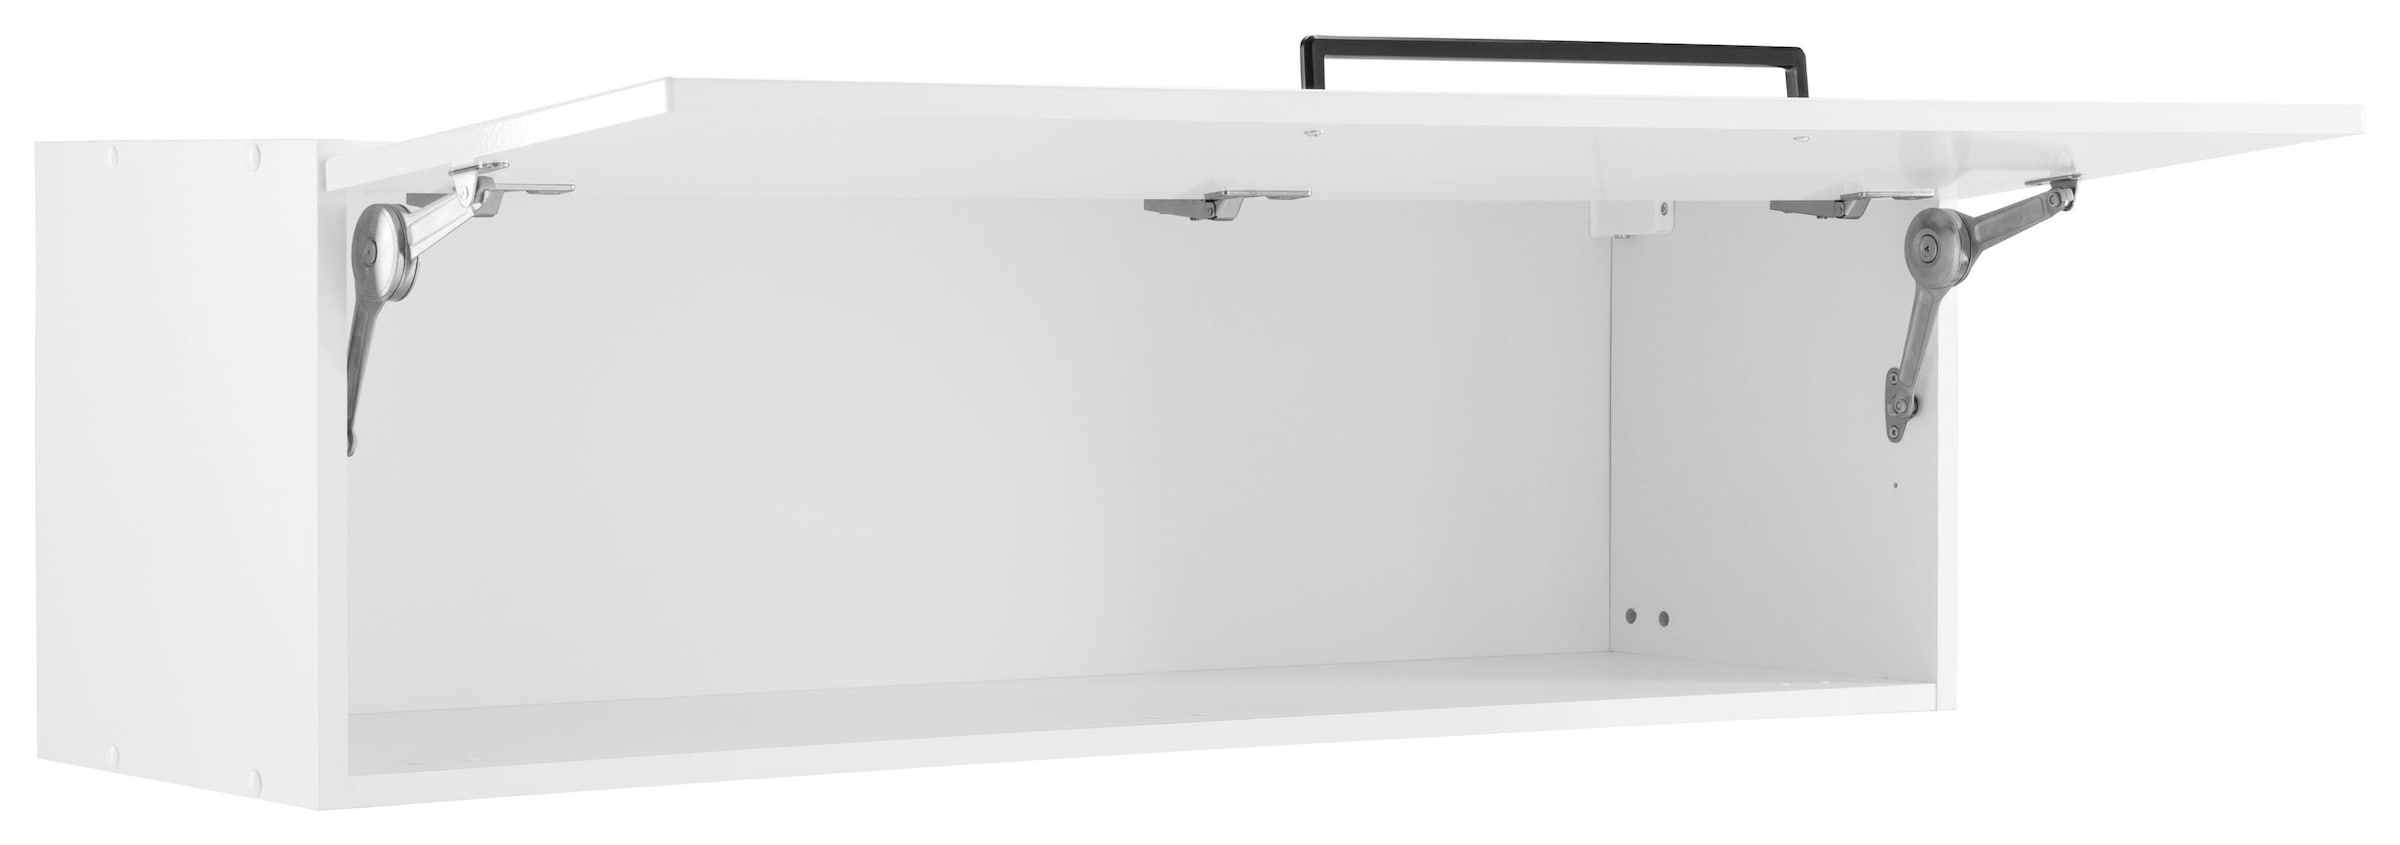 HELD MÖBEL Klapphängeschrank »Tulsa«, 110 cm breit, mit 1 Klappe, schwarzer  Metallgriff, MDF Front kaufen | BAUR